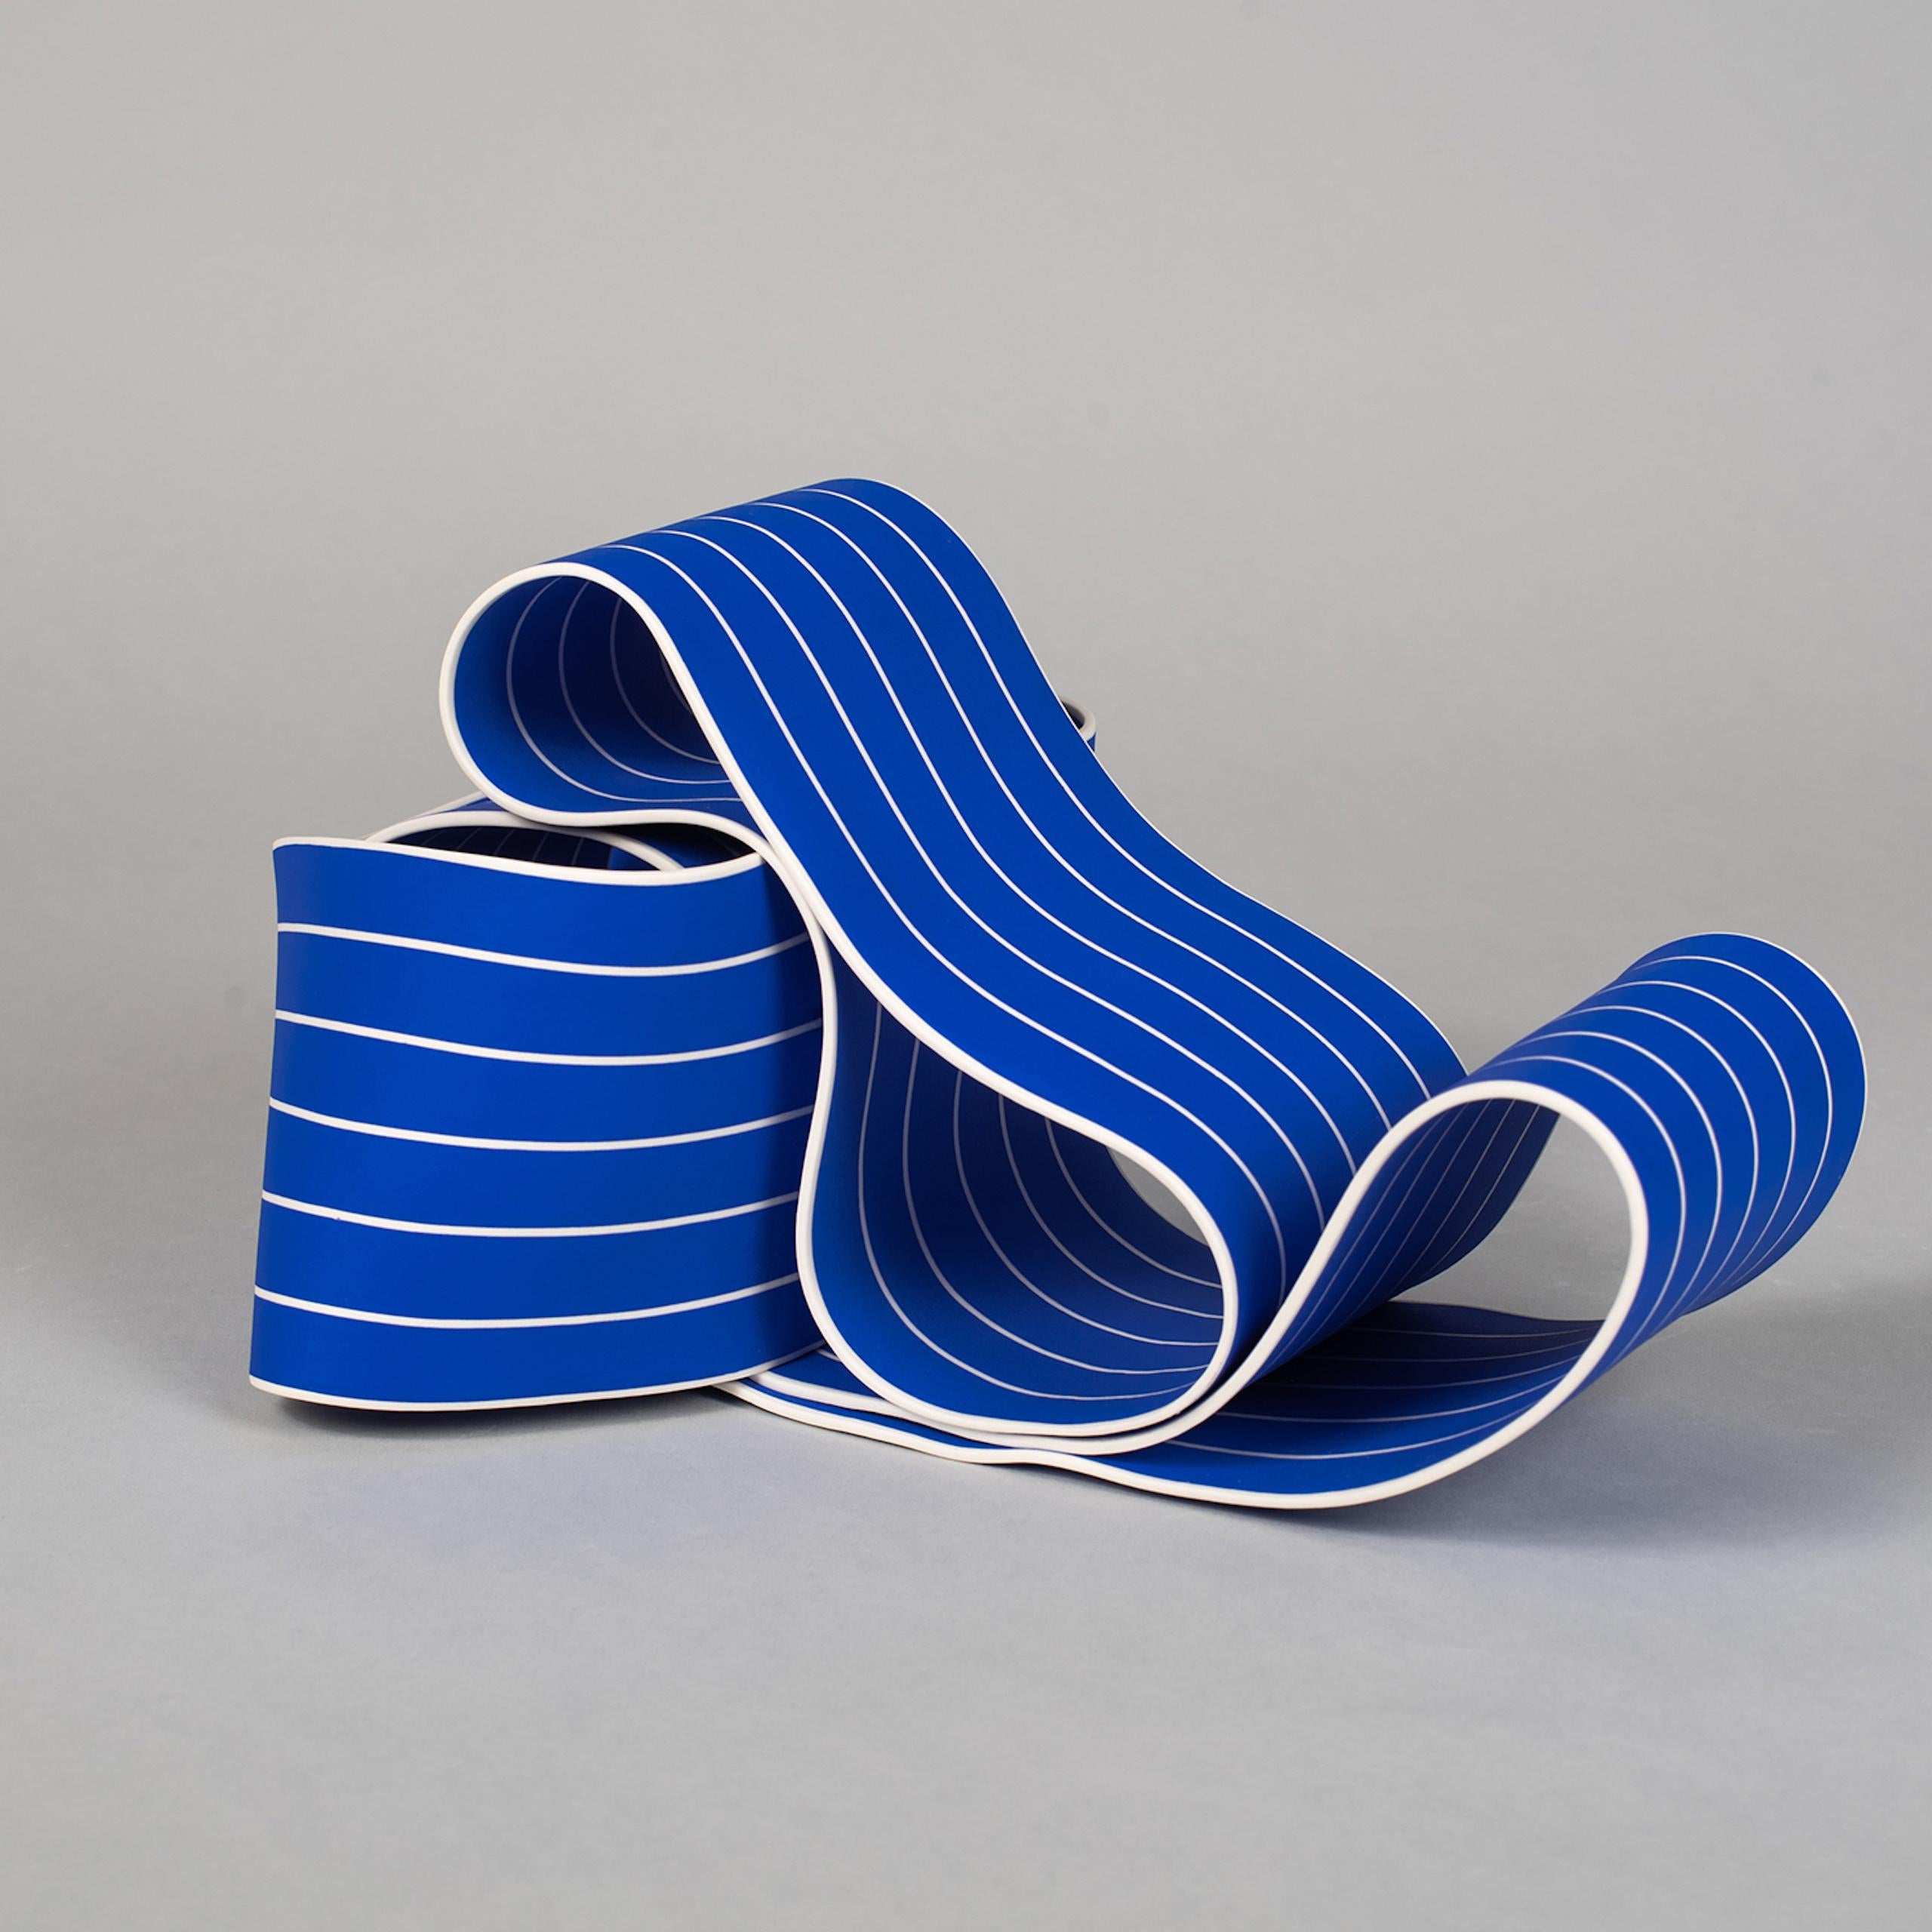 Entrapped 1 by Simcha Even-Chen - Porcelain sculpture, blue lines, movement For Sale 1